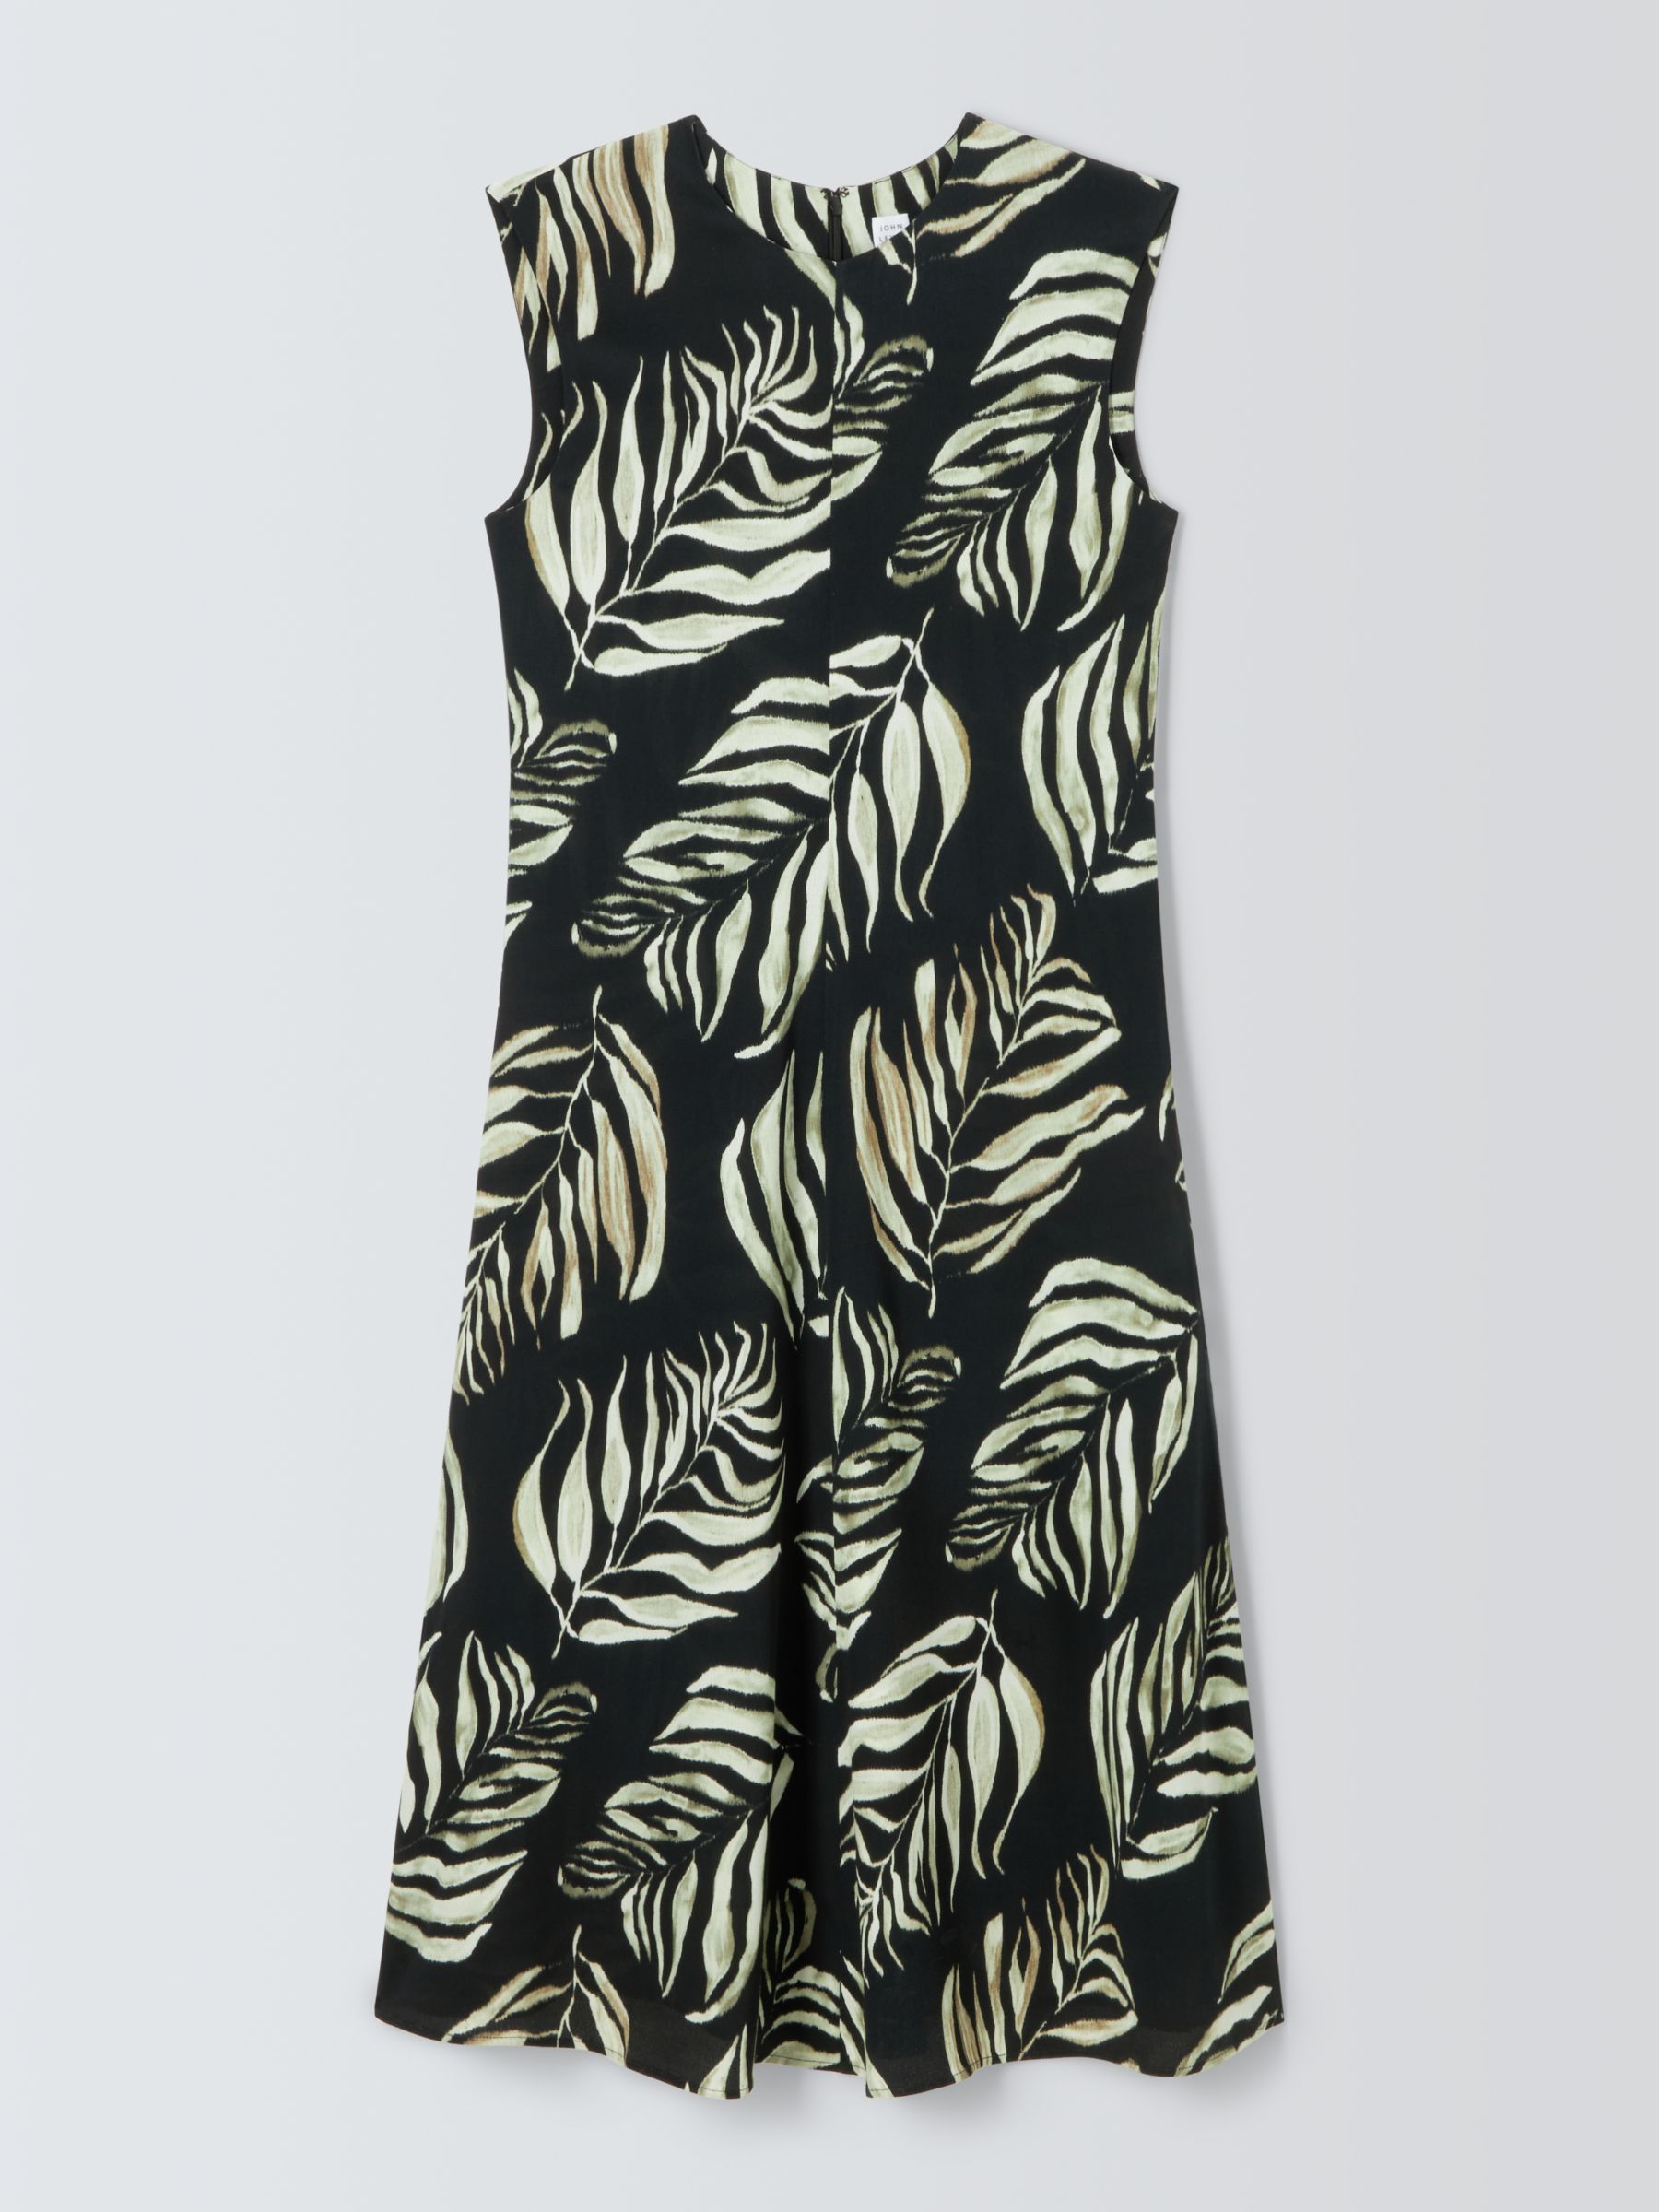 Buy John Lewis Palm Leaf Dress Online at johnlewis.com